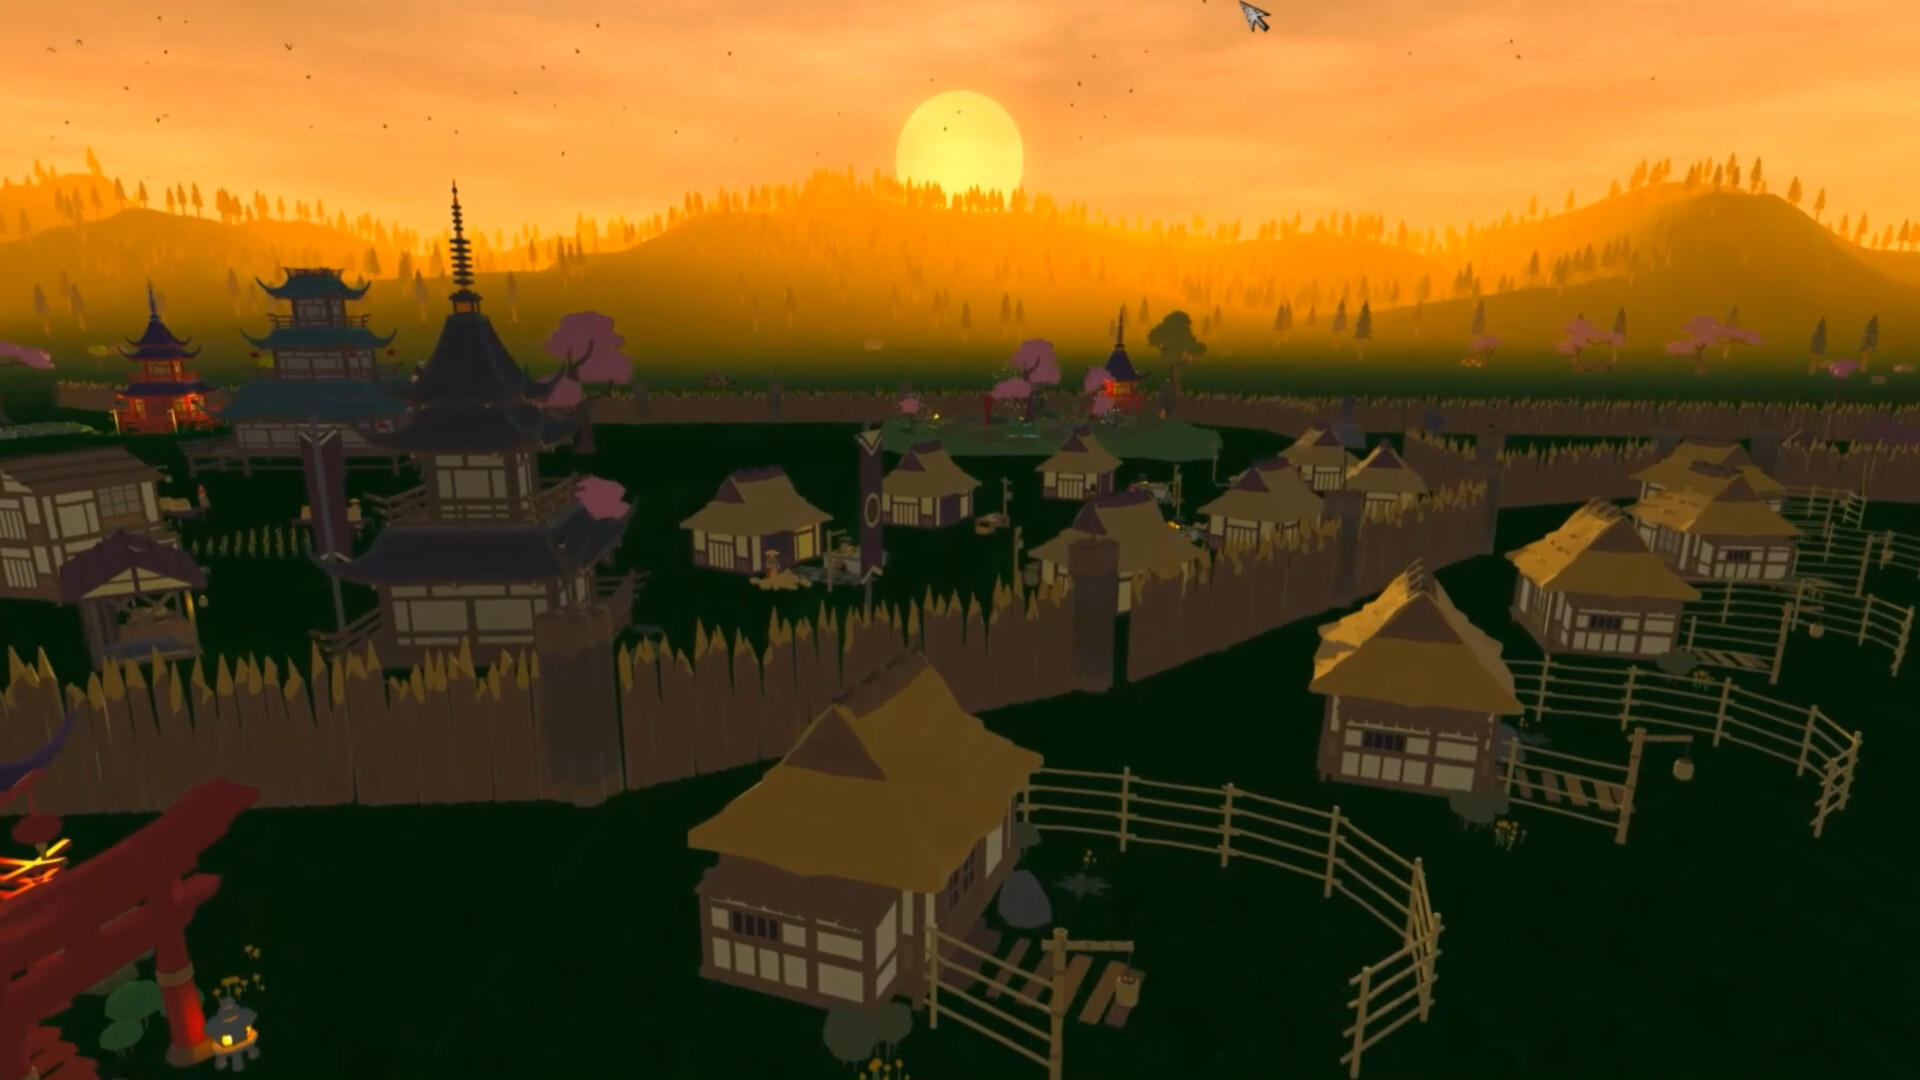 Screenshot 1 of Myoshu của Matsudaira: Mô phỏng làng Sengoku 